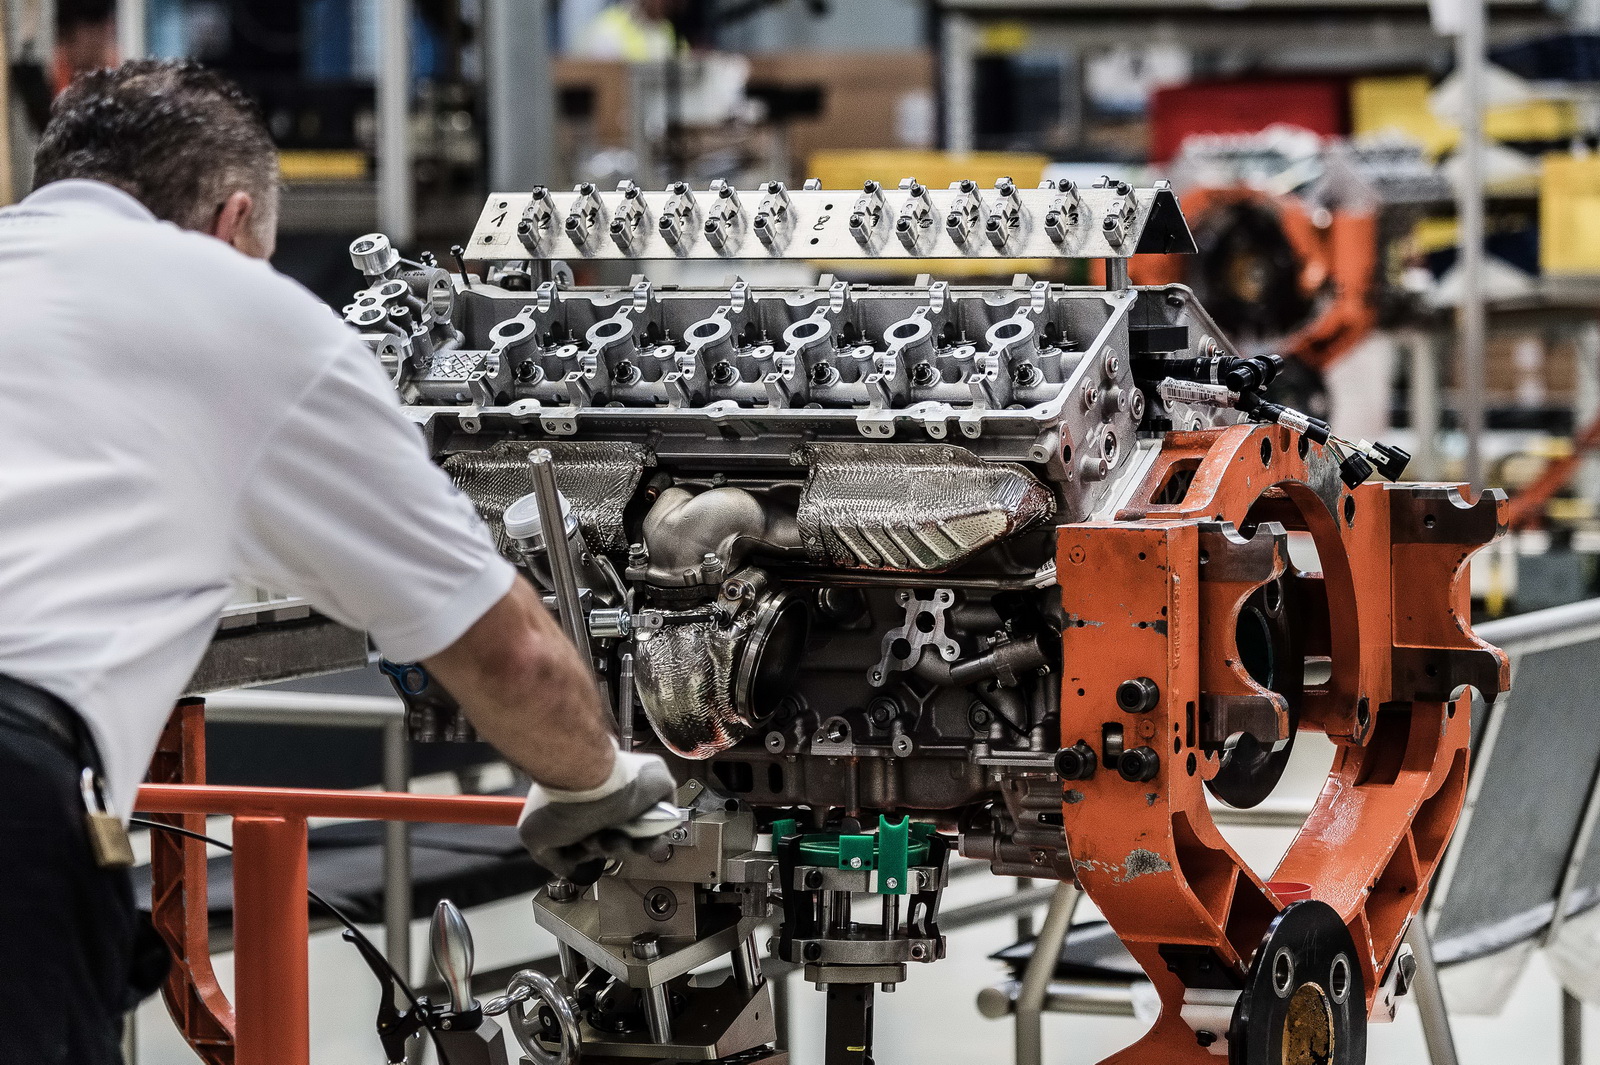 
Nhà máy này nằm cùng chỗ với nơi sản xuất Ford Fiesta và đã từng chế tạo gần 40.000 động cơ V12 trong suốt 12 năm qua. Ngoài máy V12 mới của DB11, nhà máy còn tiếp tục sản xuất động cơ V8 và V12 hút khí tự nhiên cho Aston Martin Vantage, Vanquish cũng như Rapide S.
